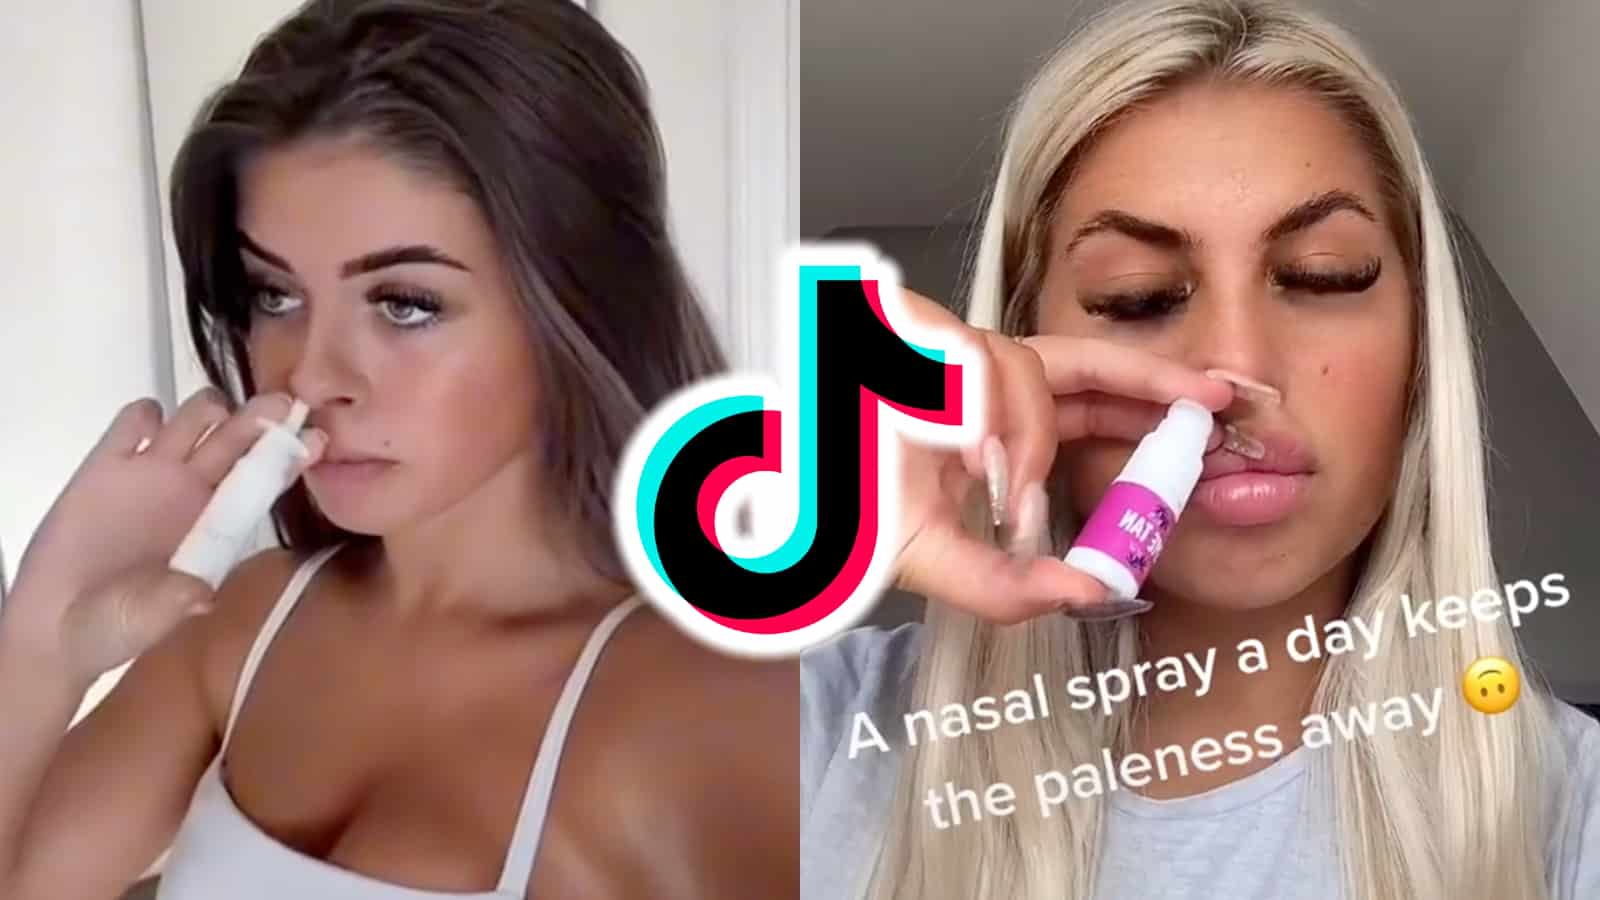 TikTokers use nasal spray tan